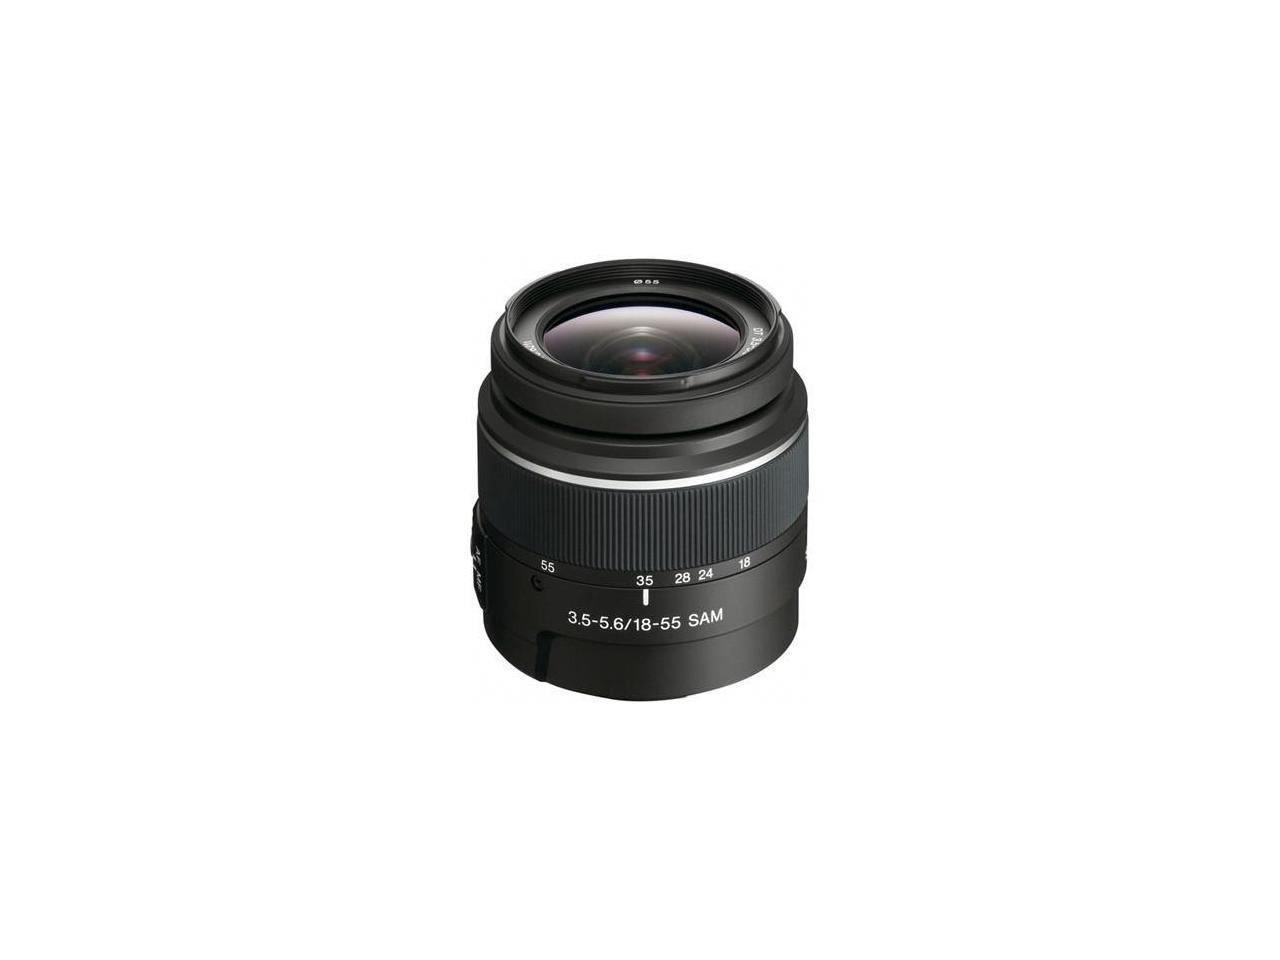 Sony DT 18-55mm f/3.5-5.6 Standard Zoom Lens for (alpha) DSLR Camera #SAL1855